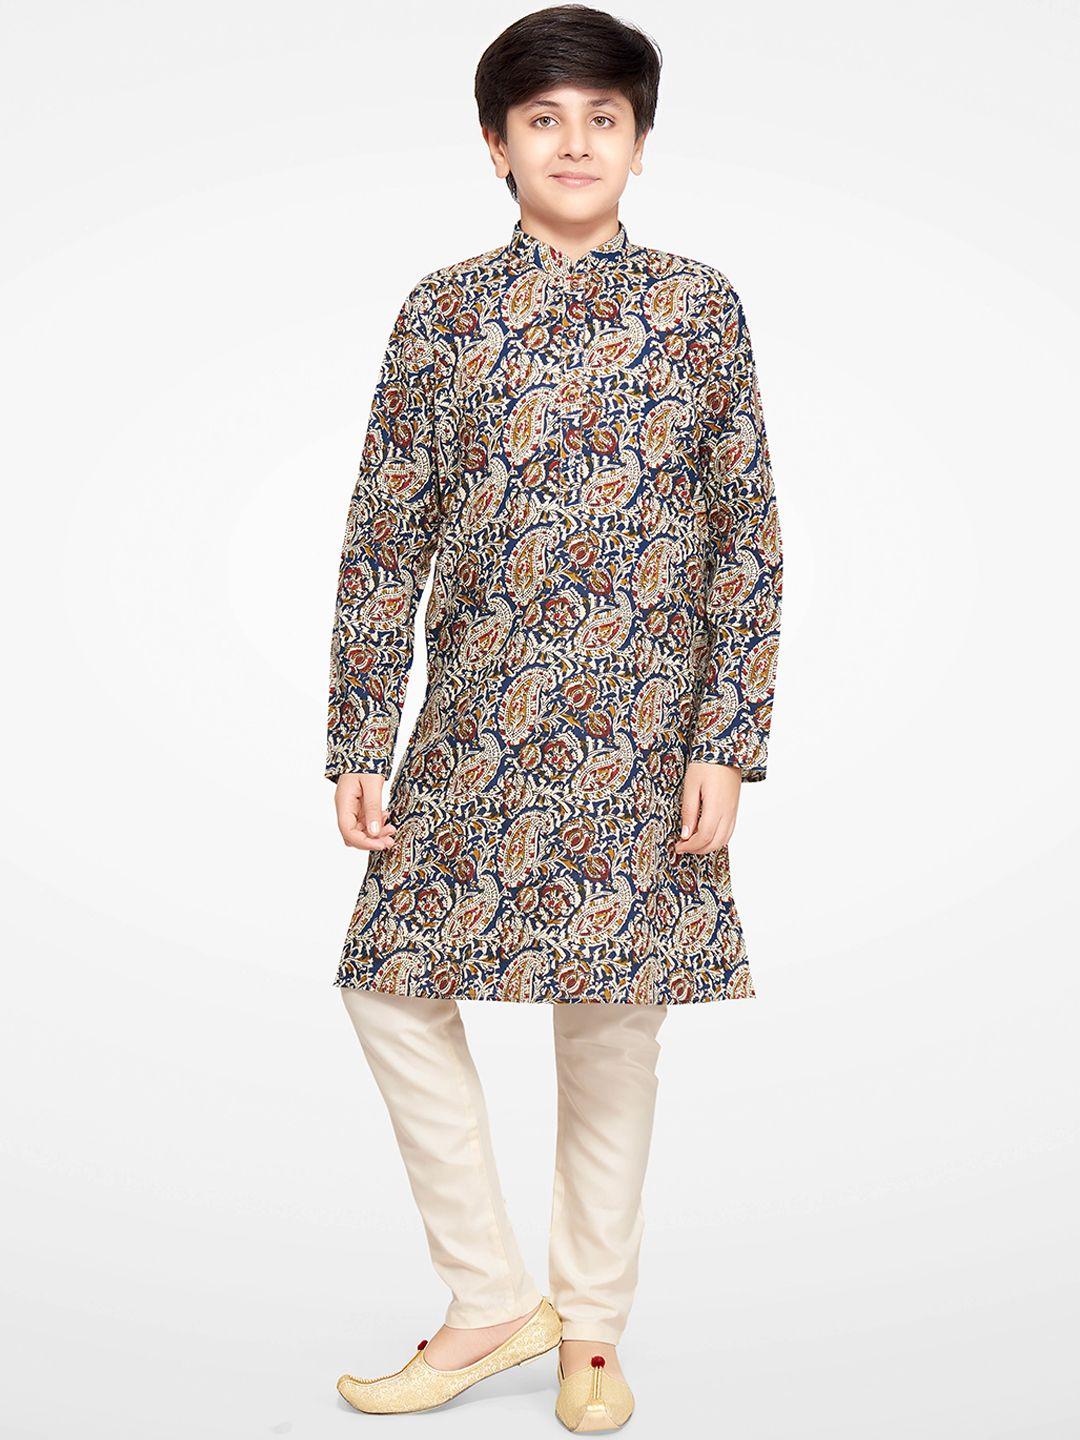 jeetethnics-boys-multicoloured-floral-printed-kurta-with-pyjamas